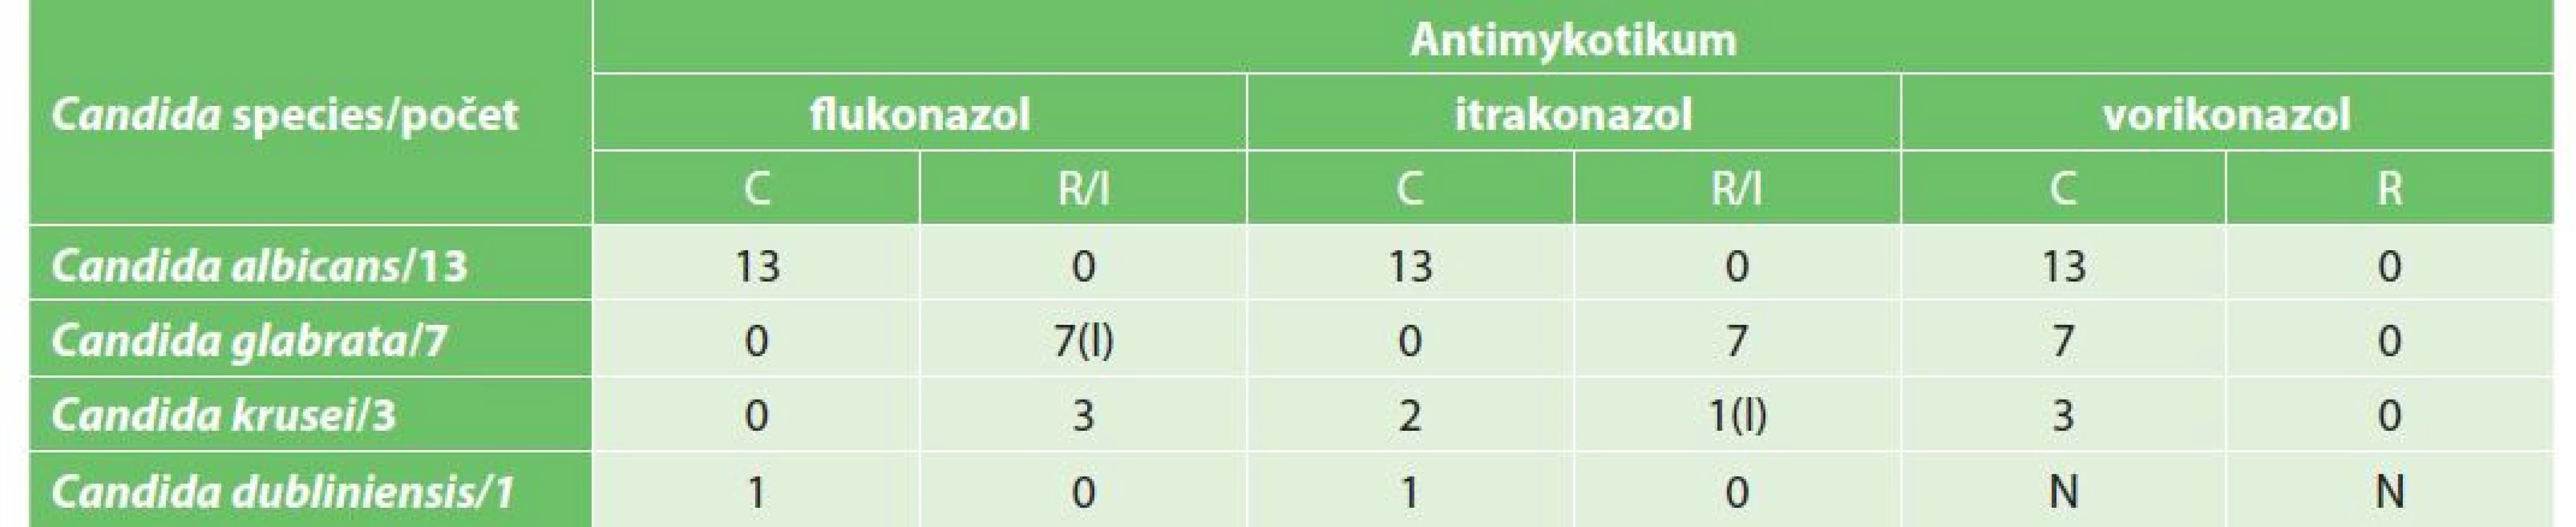 Antimykotická citlivost/rezistence<br>
Tab. 2: Antifungal susceptibility / resistance